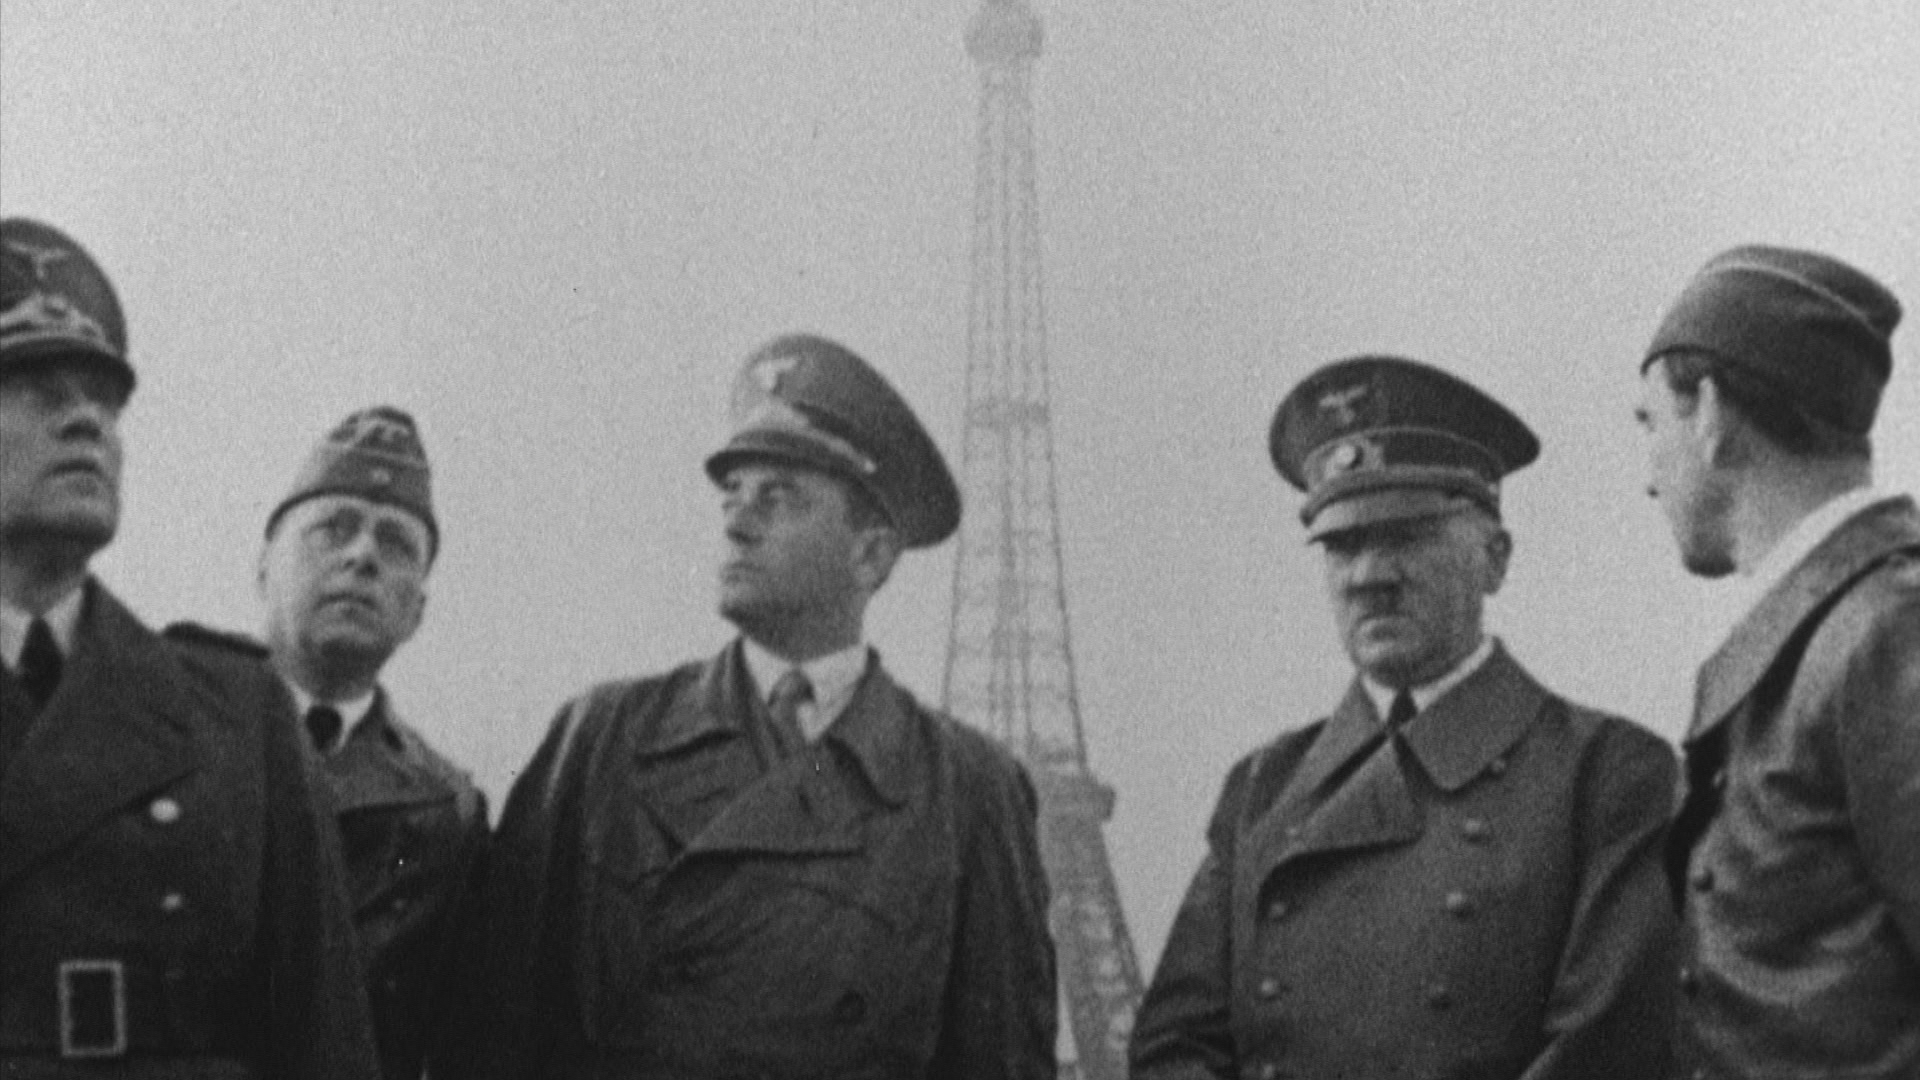 Hitler et Paris, histoire d'une fascination